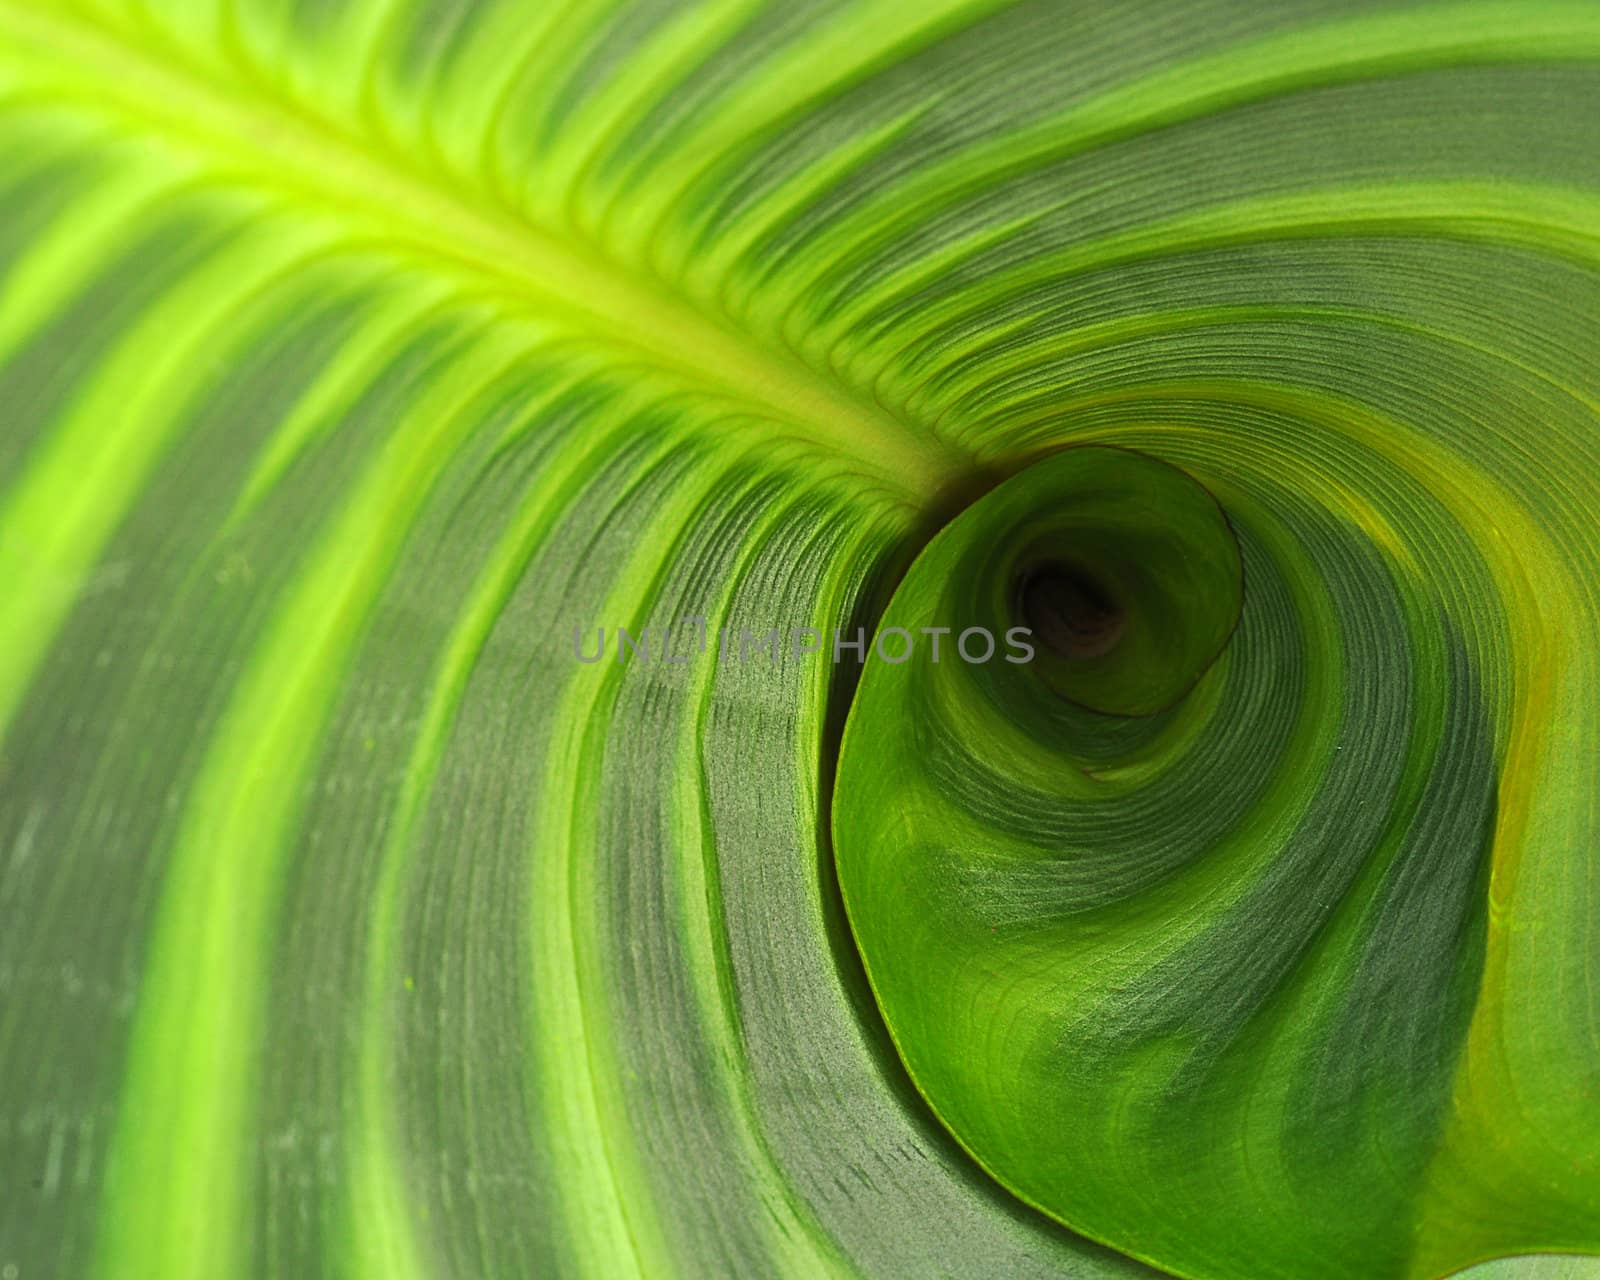 A Broad Green Leaf by jkraft5